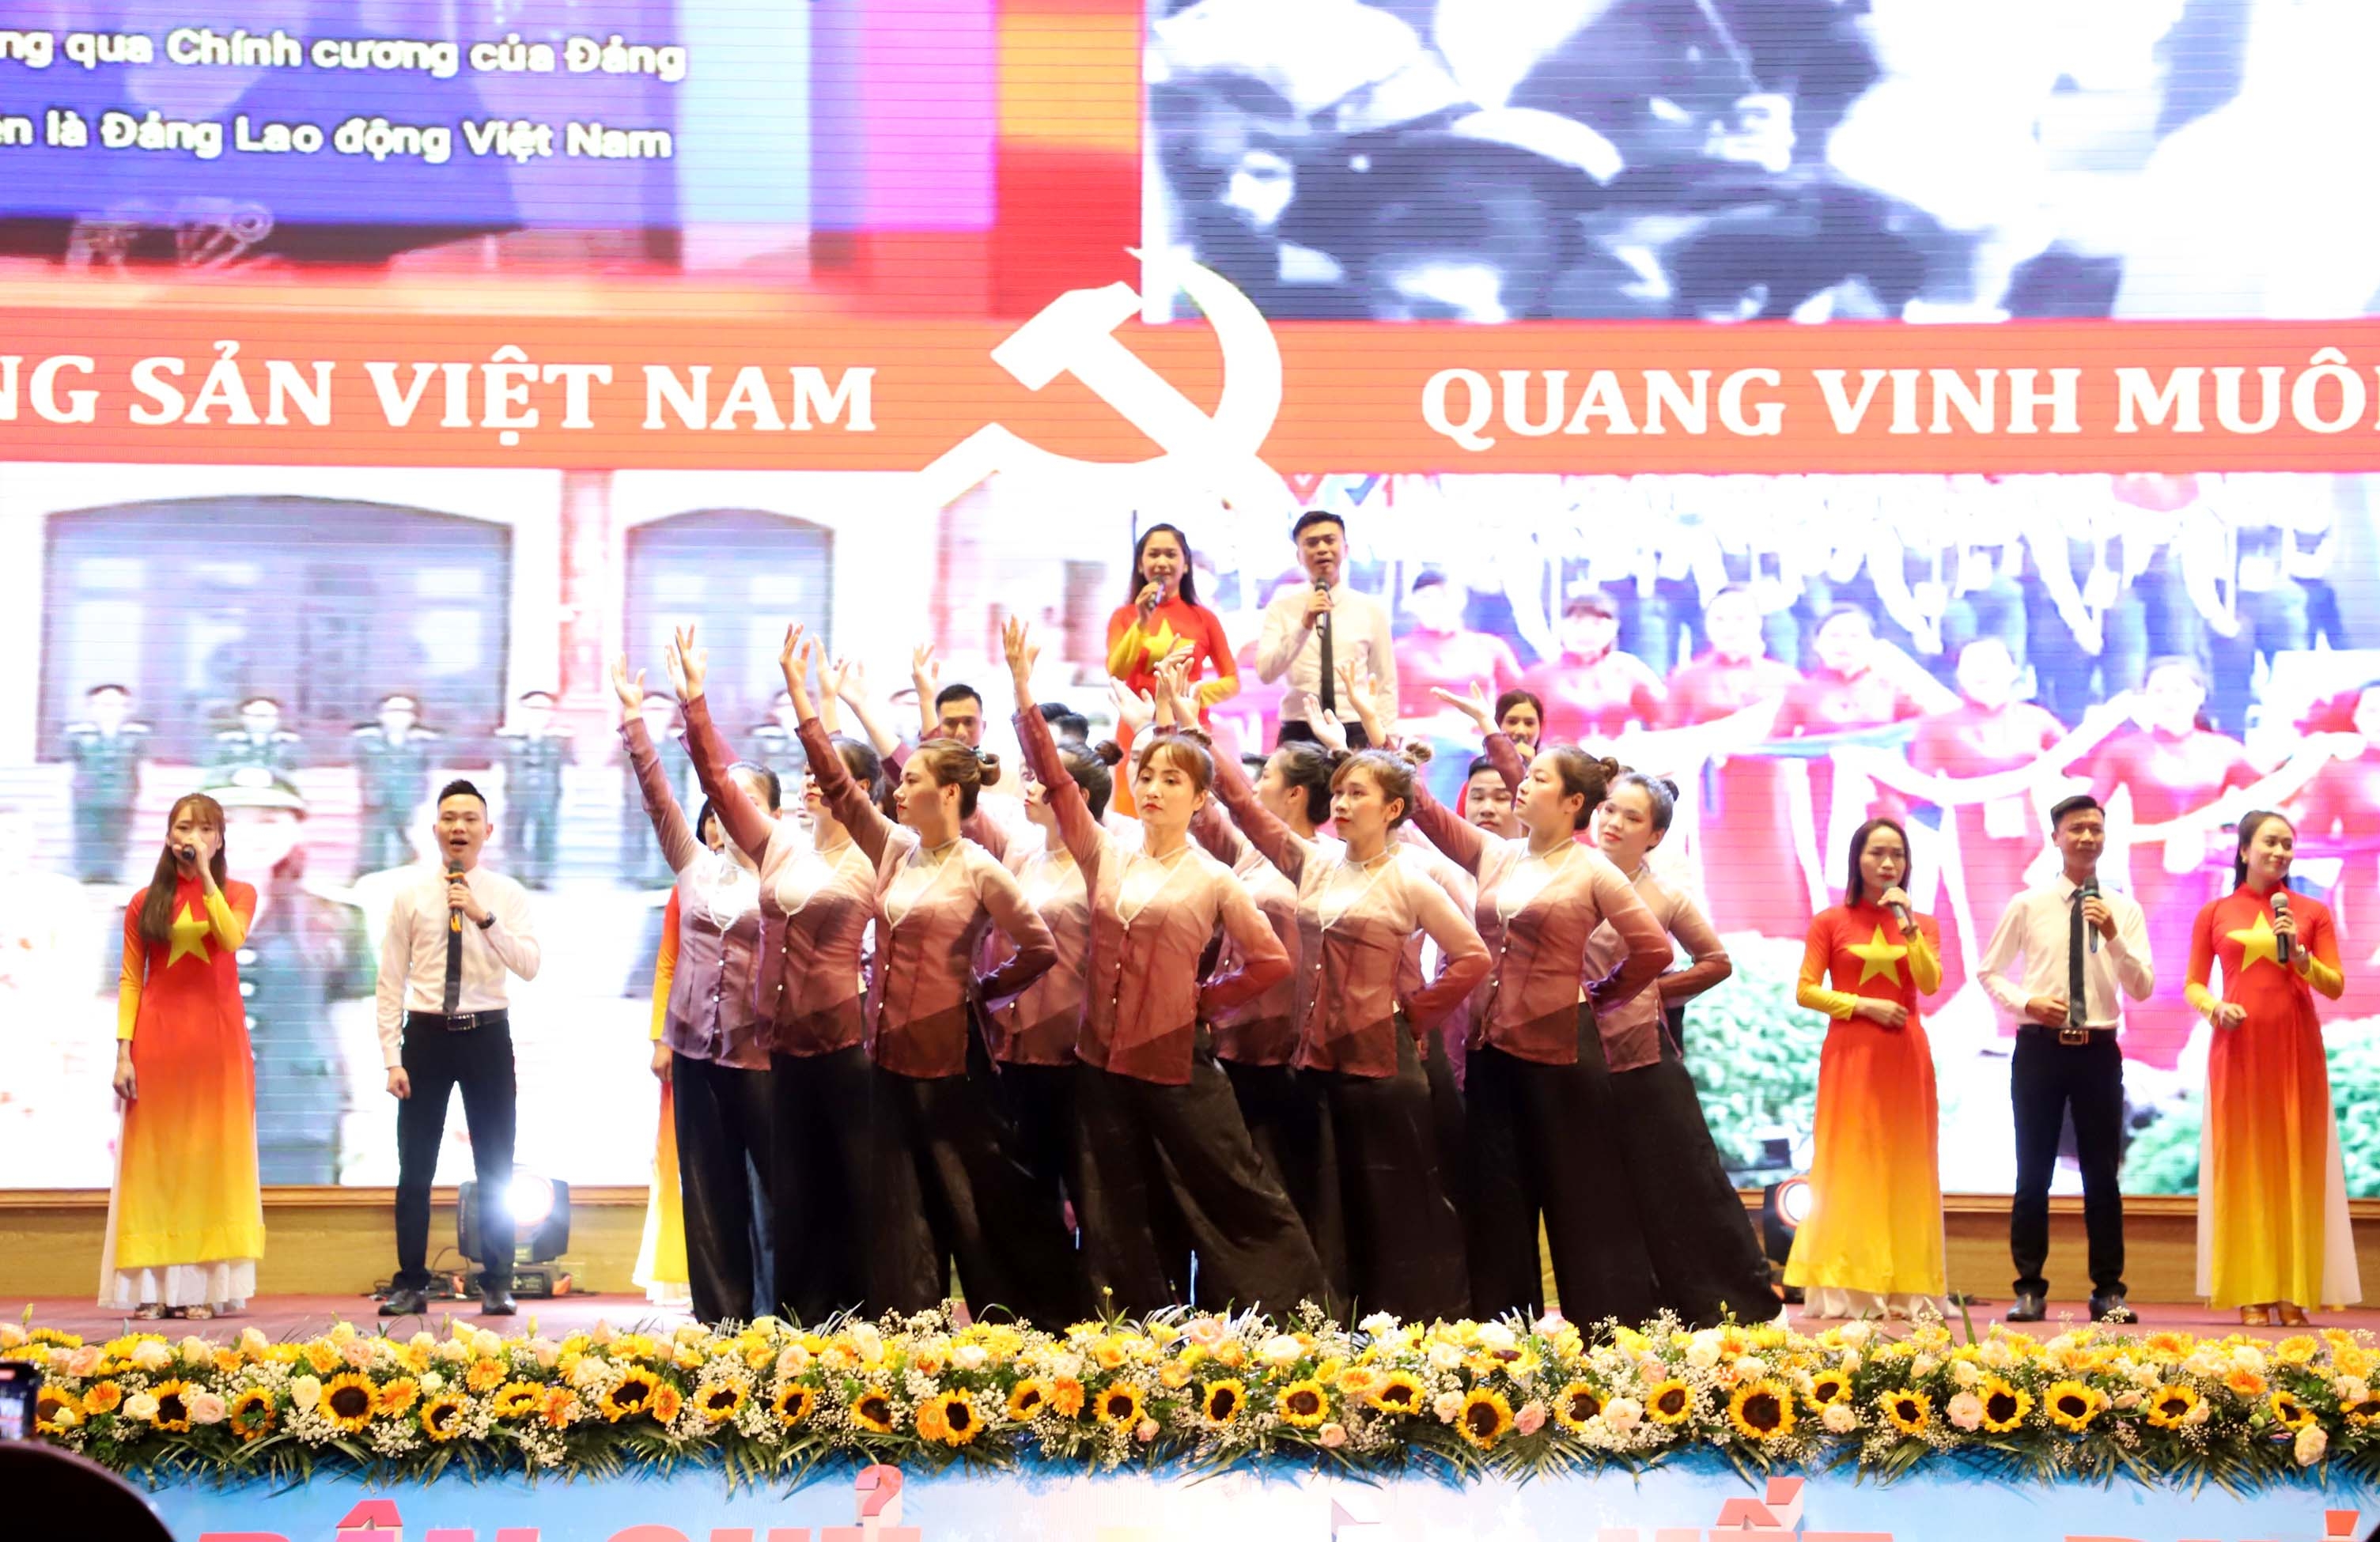 ĐANG TRỰC TUYẾN: Tưng bừng ngày hội lớn của CNVCLĐ các Khu công nghiệp và chế xuất Hà Nội